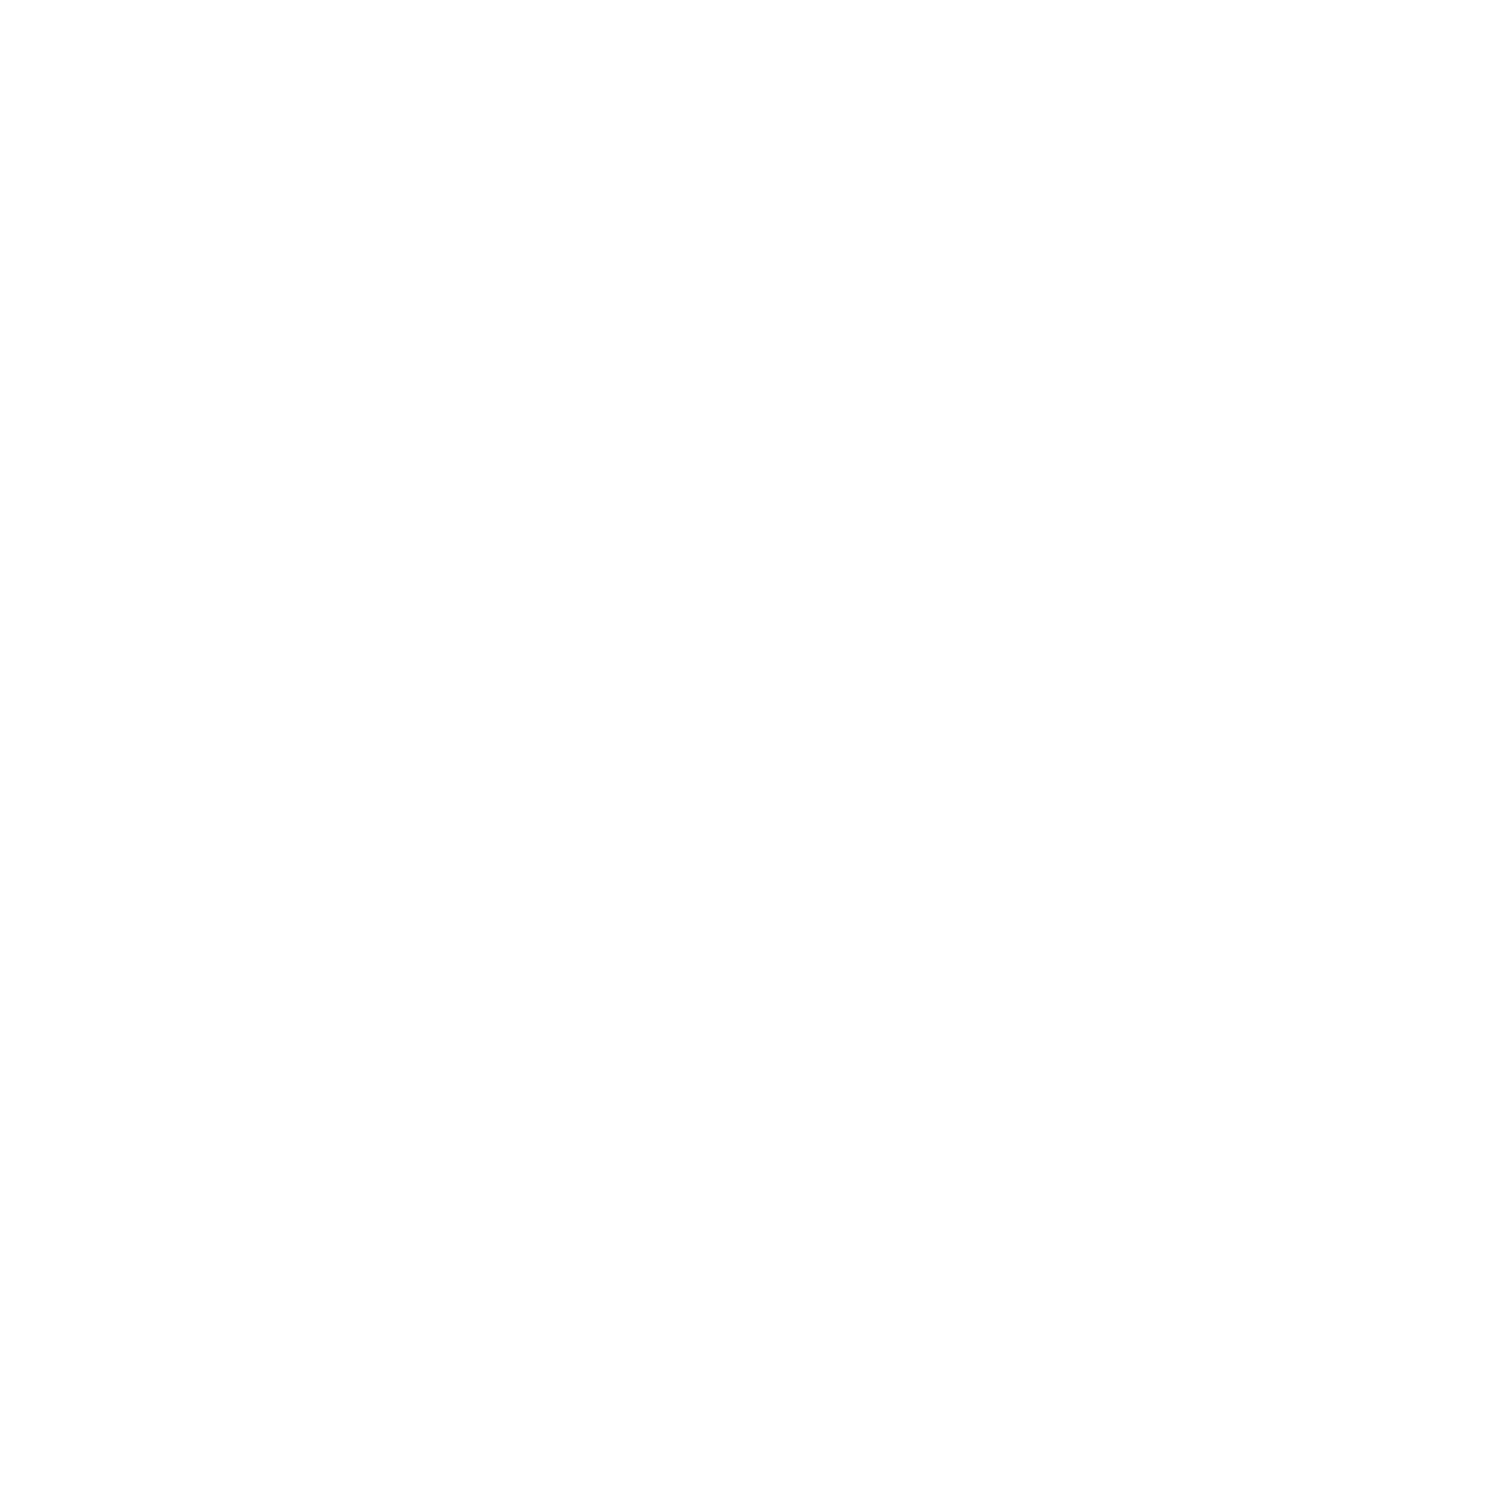 McMahon Design